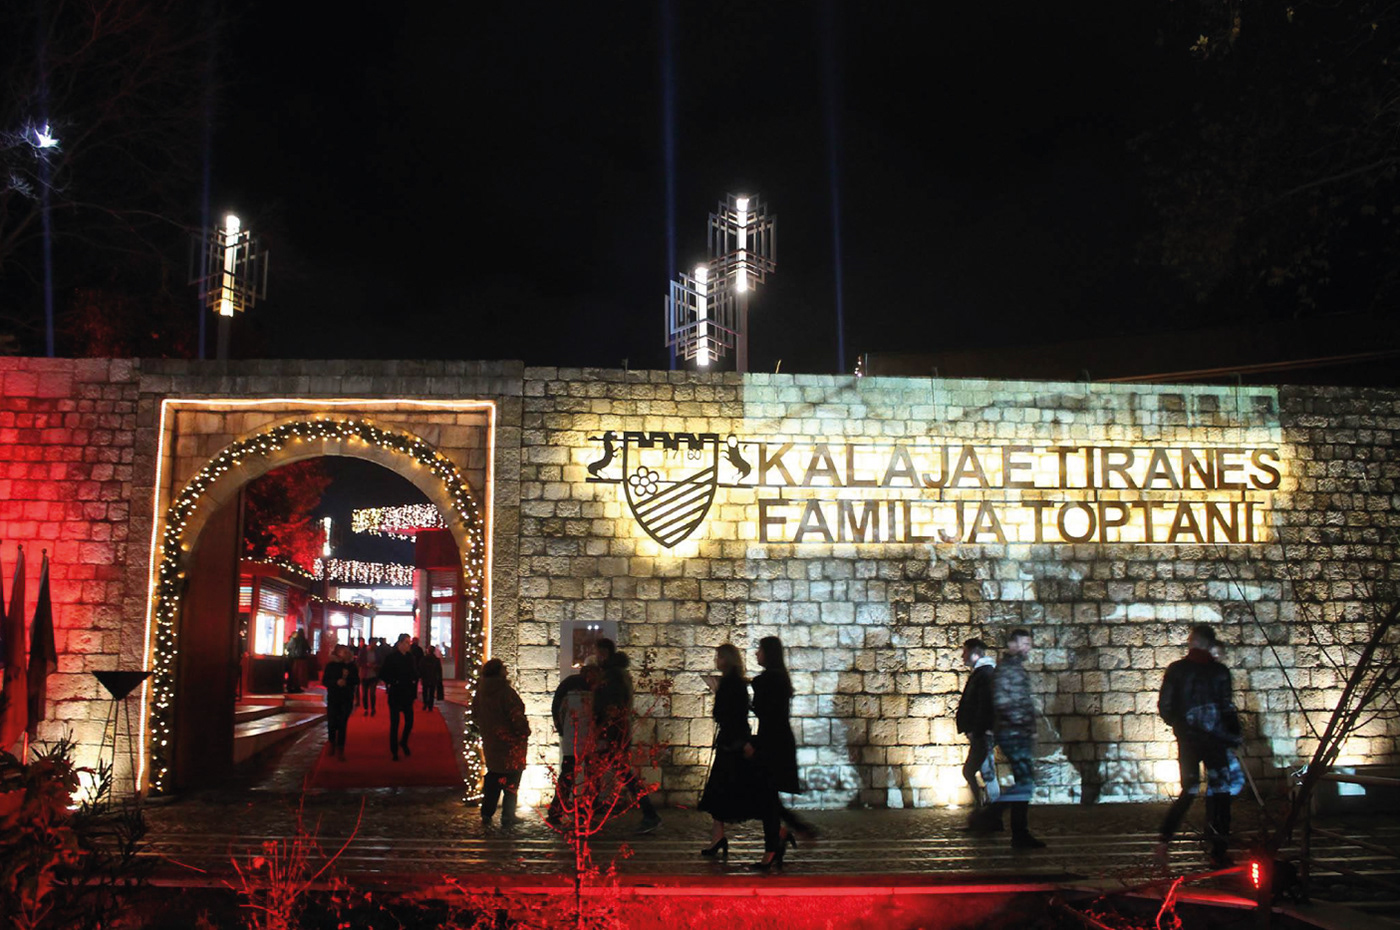 Kalaja ne qytetin e Tiranës është një monument i trashëgimisë kulturore në rrethin e Tiranës, në qarkun e Tiranës, Shqipëri .